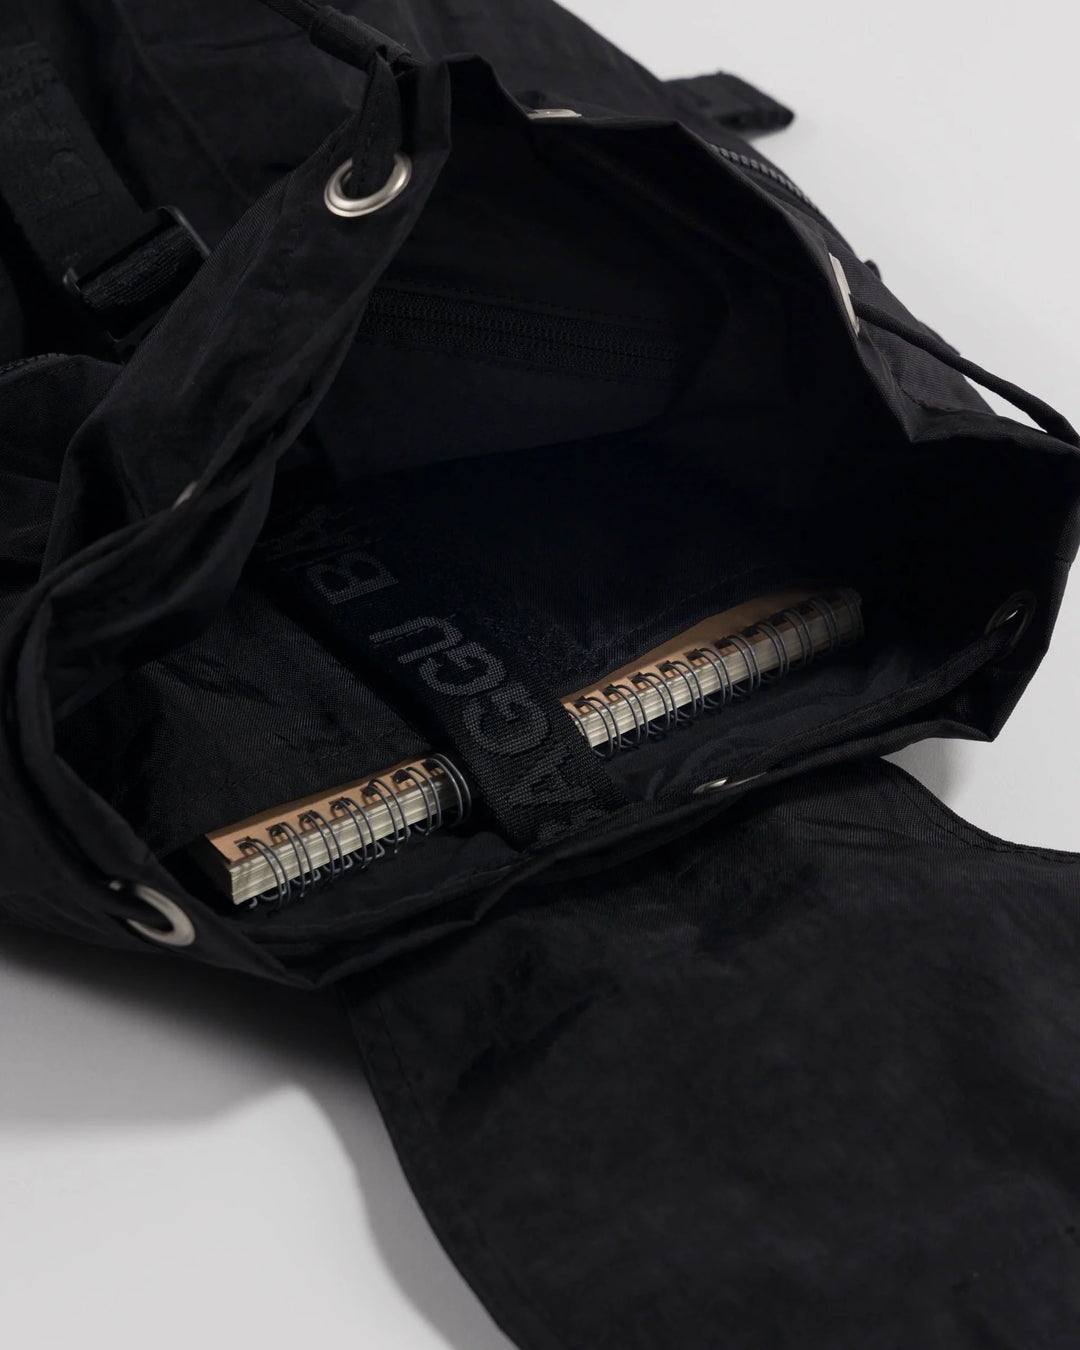 Primecut – Tan Checkered Cowhide Bum Bag